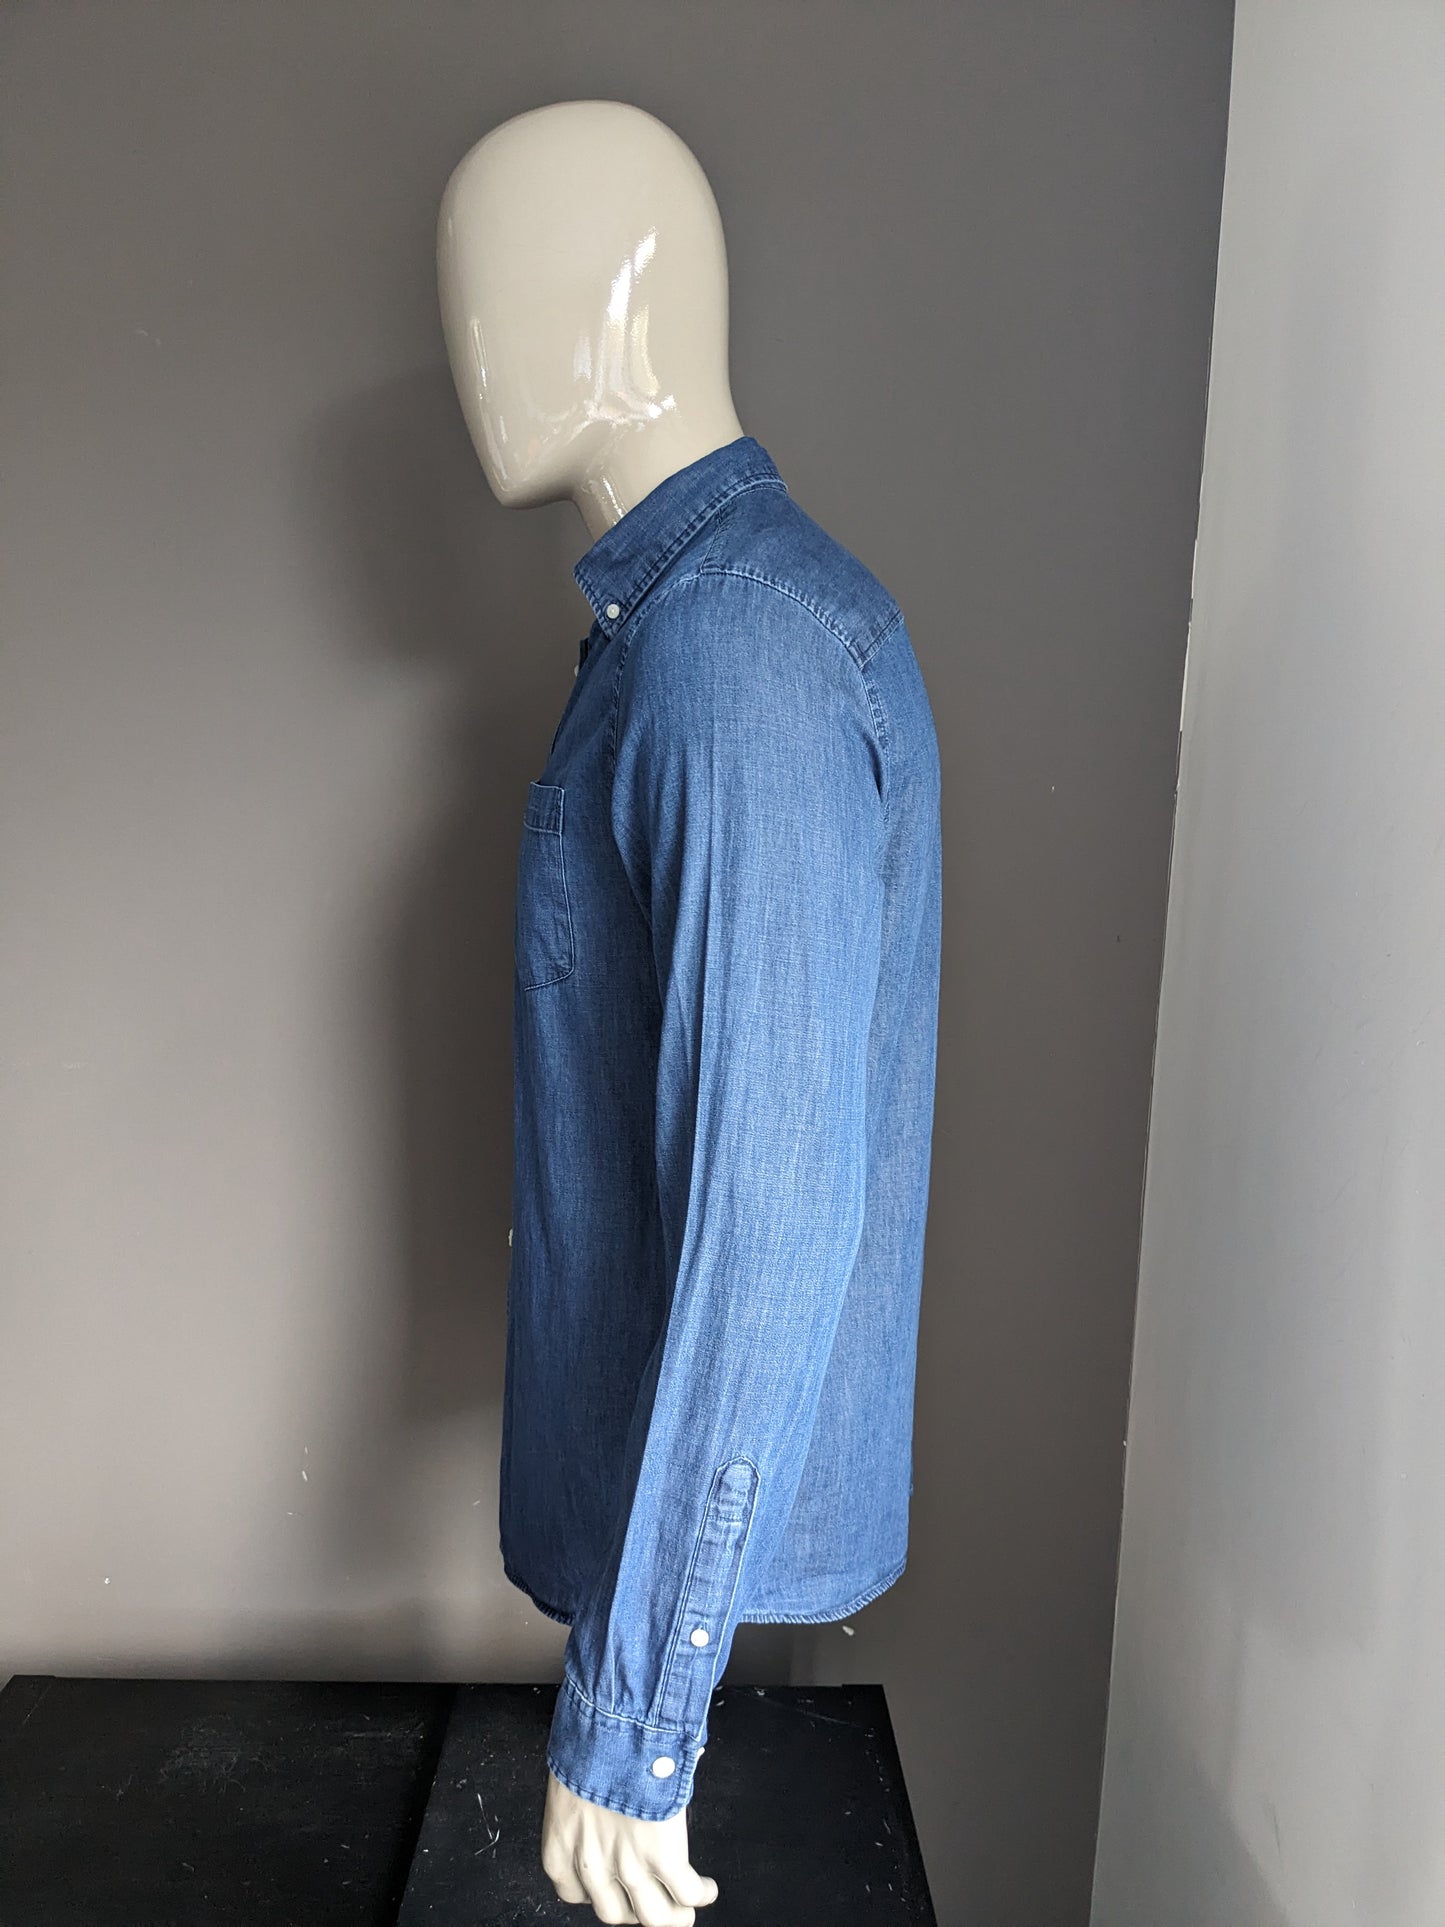 I jeans Homme selezionati sembrano camicia. Colorato blu. Taglia M. Fit regolare.